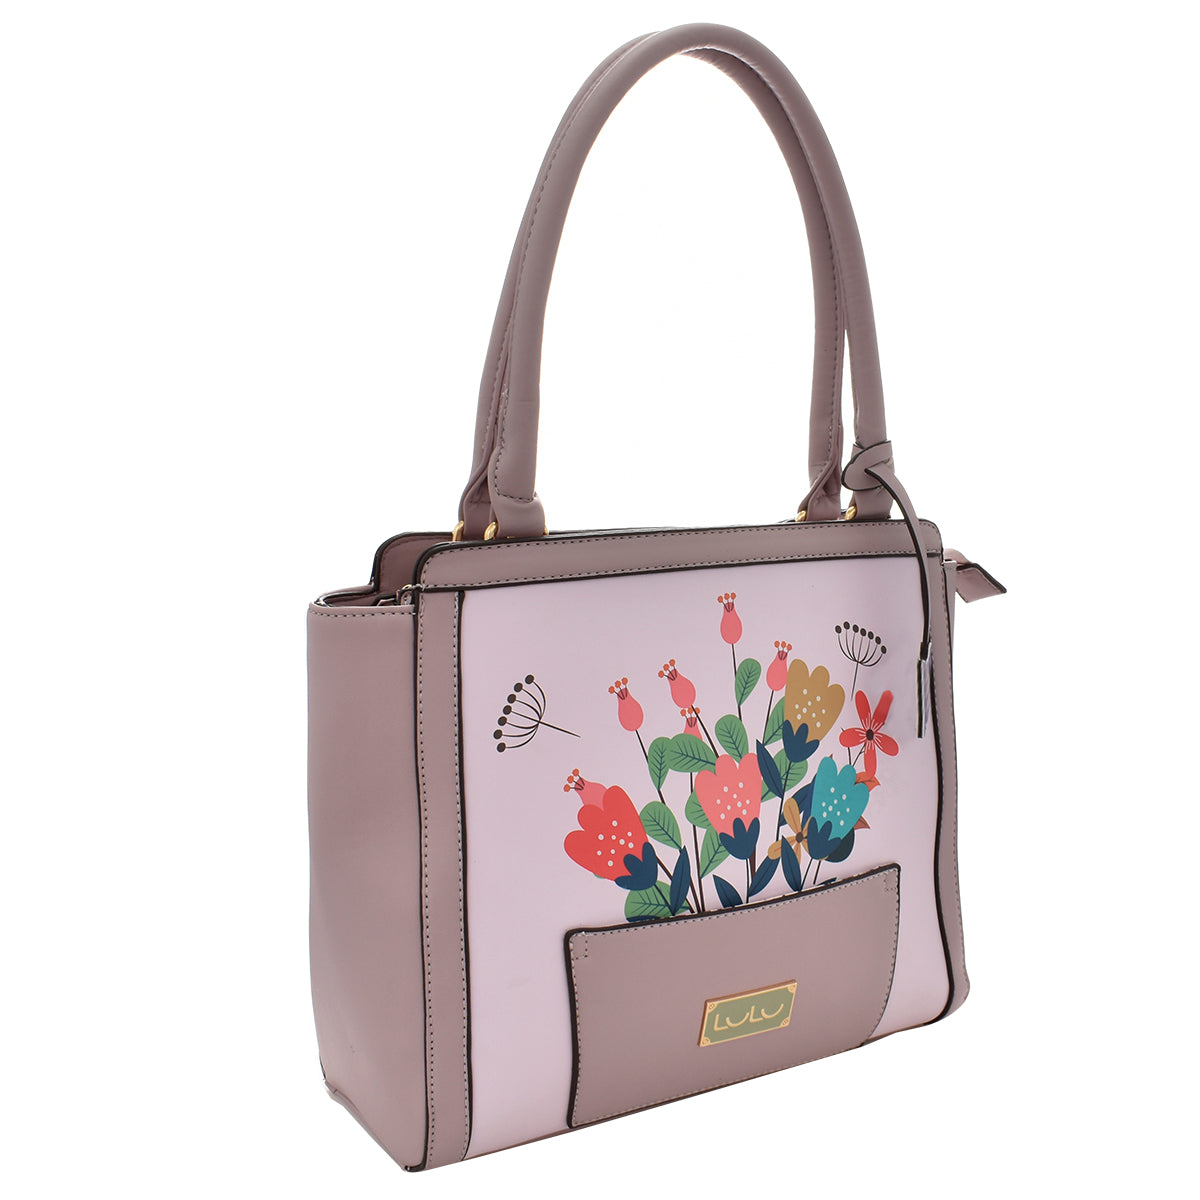 Bolsa [Lulu] tipo tote con diseño de flores color lila